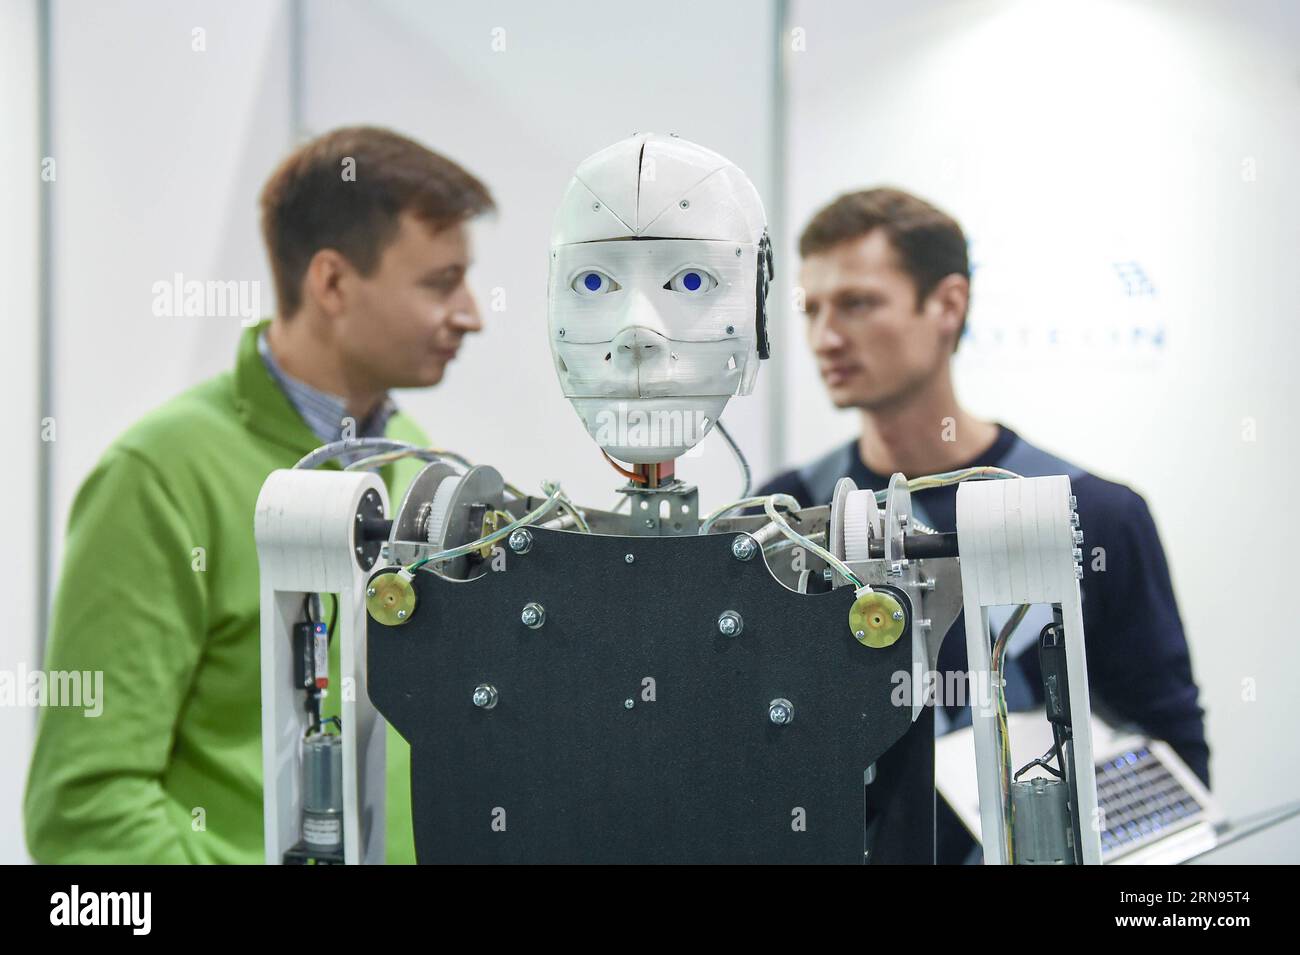 (151120)-- MOSKAU, 20. November 2015--- Ein menschenähnlicher android wird auf der Robotics Expo 2015 in Moskau, Russland, am 20. November 2015 gezeigt. Die 3. Internationale Robotik Expo startete hier am Freitag, in der neue Technologien wie 3D-Druck, virtuelle Realität, Drohne usw. gezeigt wurden. )(azp) RUSSLAND-MOSKAU-TECHNOLOGIE-ROBOTER Daixtianfang PUBLICATIONxNOTxINxCHN 151120 Moskau 20. November 2015 ein Mensch-wie-Android WIRD AUF der Robotics EXPO 2015 in Moskau gezeigt Russland AM 20. November 2015 startete hier AM Freitag die 3. Internationale Robotics EXPO, in der Emerging Technologies Search als 3D Printing Virt Stockfoto